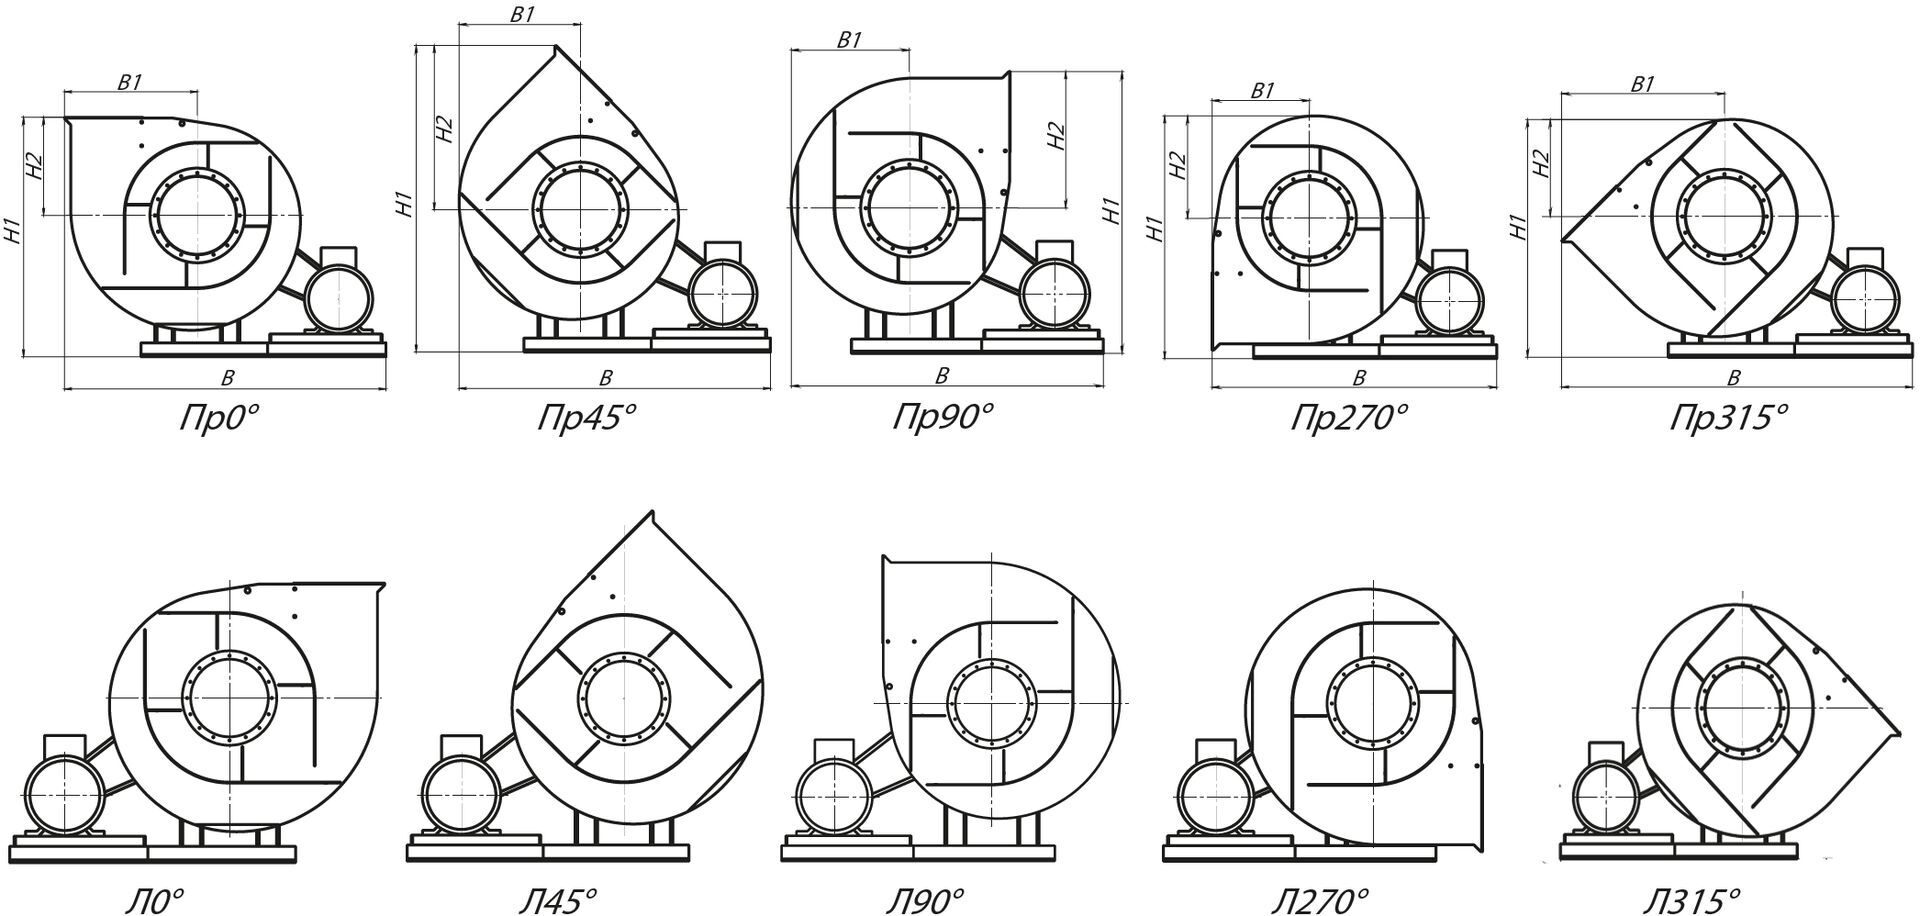 Стандартные варианты углов поворота корпуса вентиляторов ВР 130-28-12,5 схема 5 (исполнение 5)